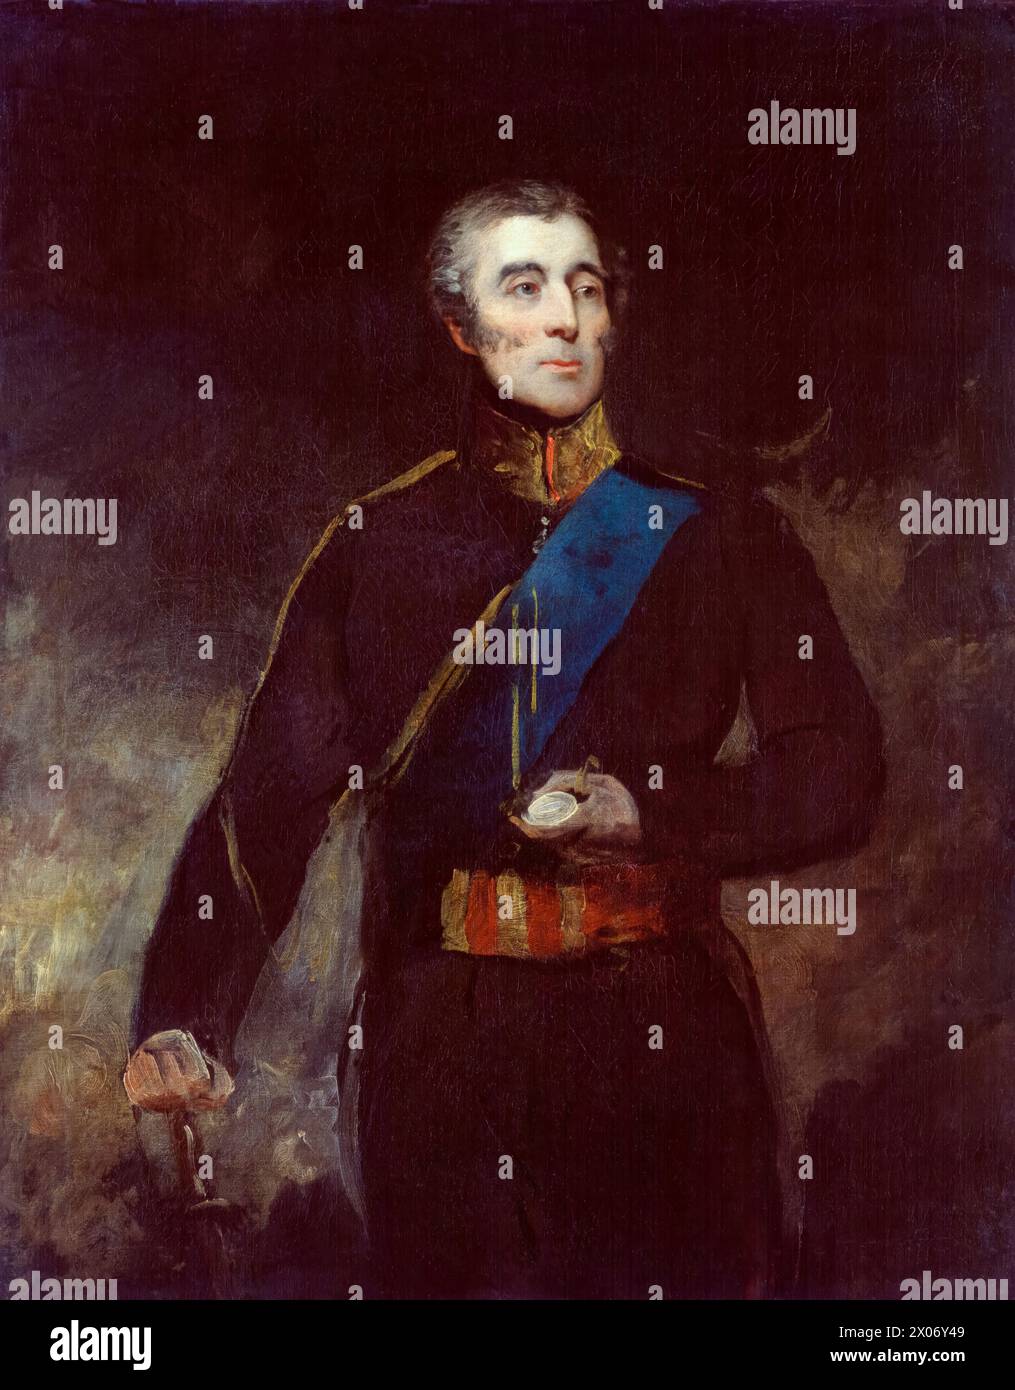 Arthur Wellesley, i duca di Wellington, (1769-1852), ritratto a olio su tela di John Jackson, 1830-1831 Foto Stock